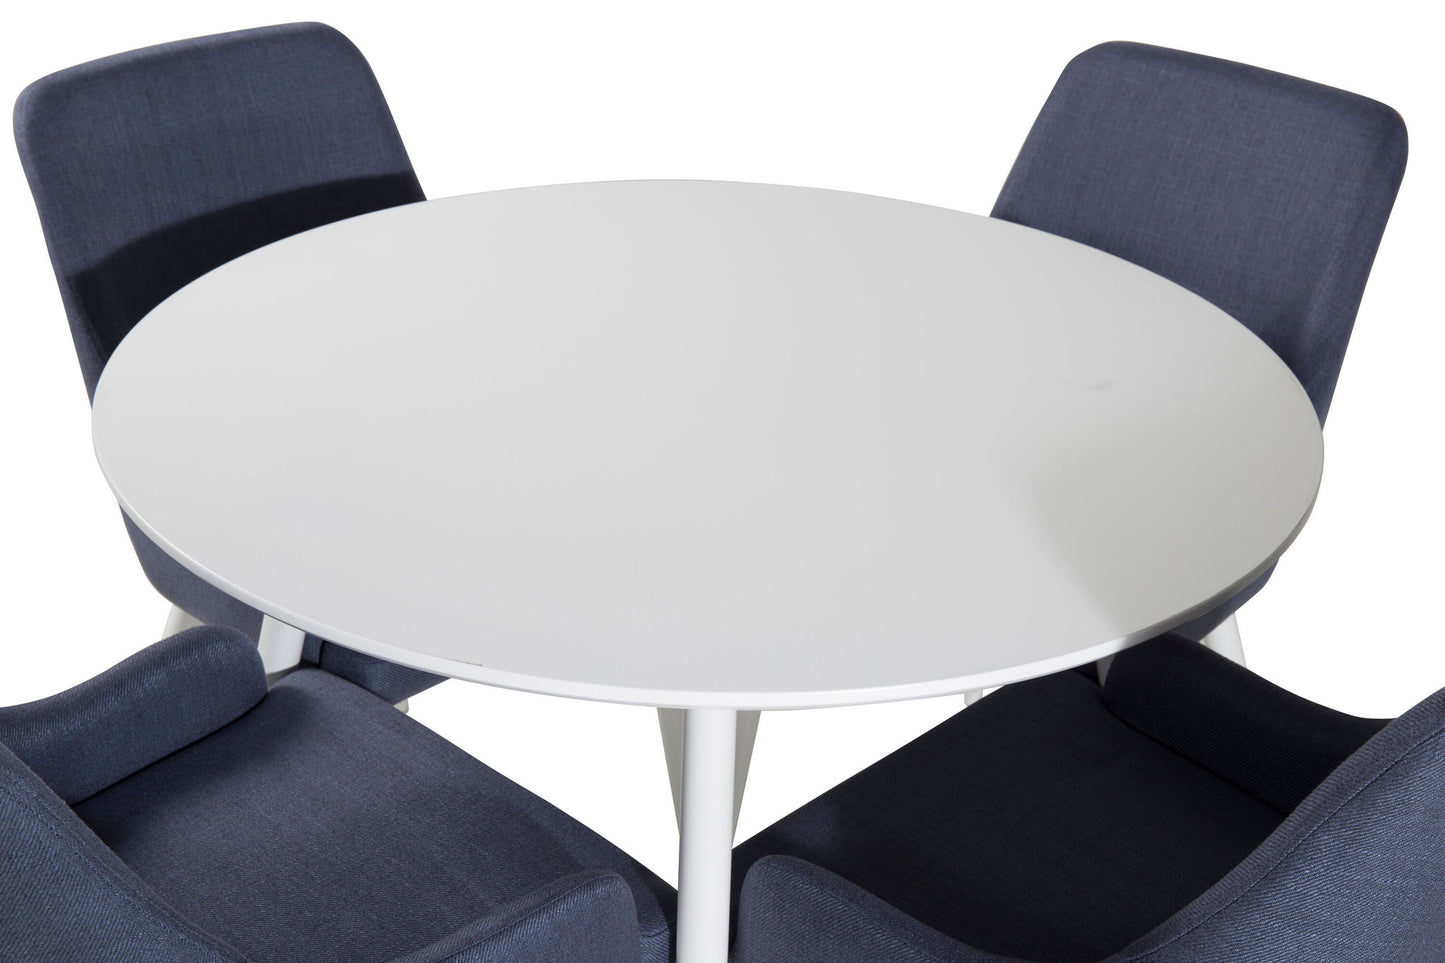 Plaza Rundt Bord 100 cm - Hvid top / Hvide ben+ Plaza Spisebordsstol - Hvide ben - Blåt stof